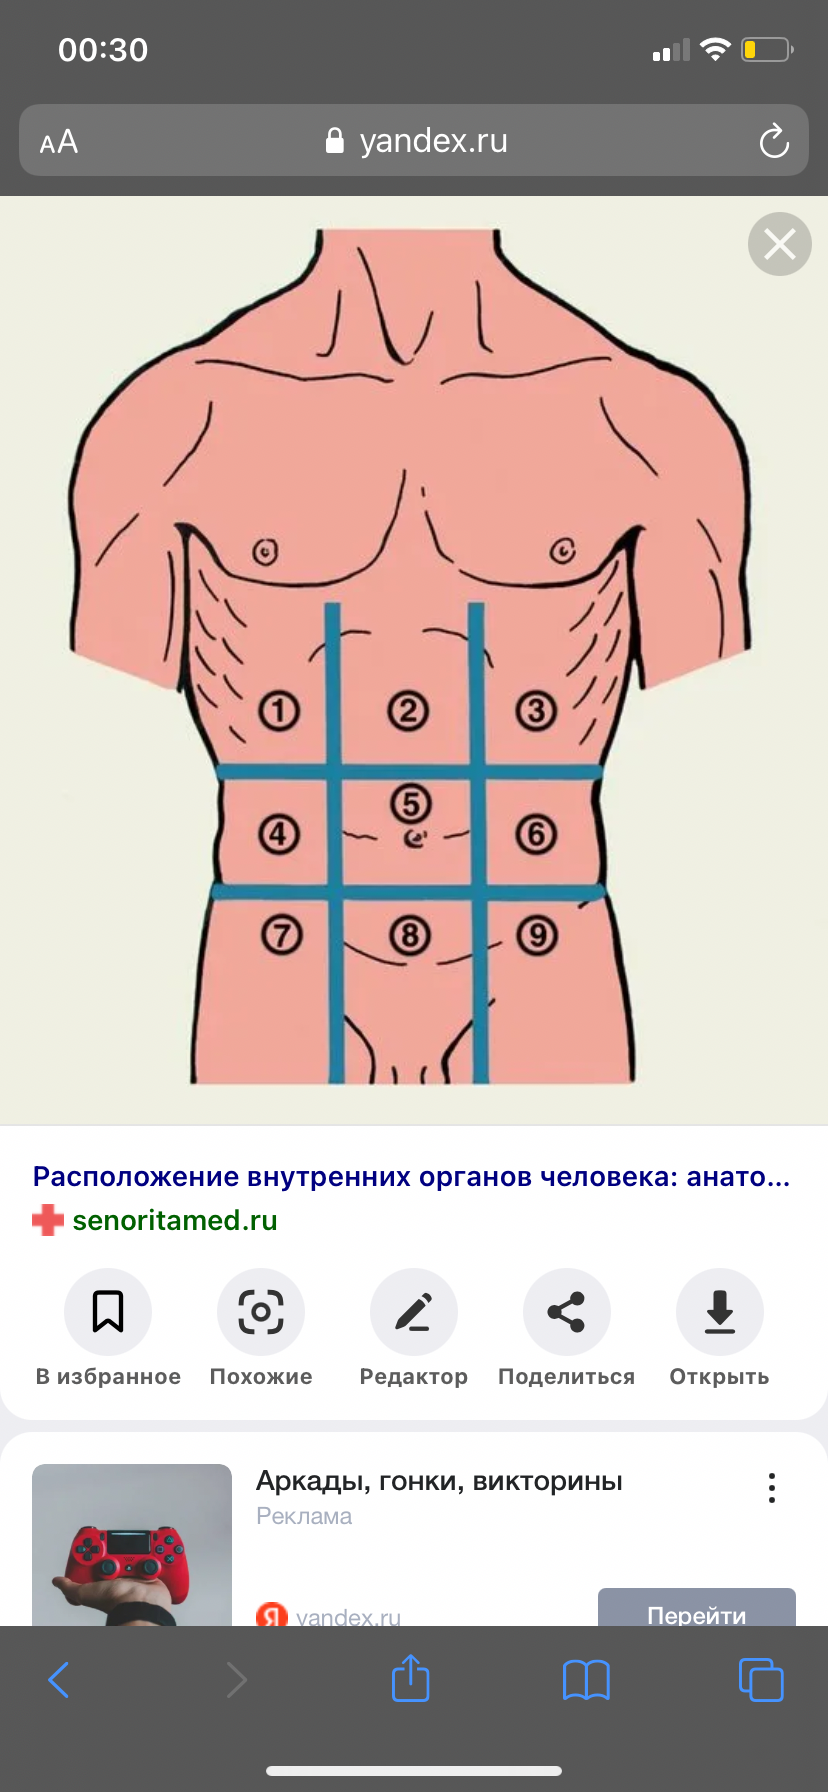 Эпигастральная область желудка. Подложечная область желудка. Эпигастральная область желудка где находится фото. Подложечная область желудка это где находится. Подложечная область живота